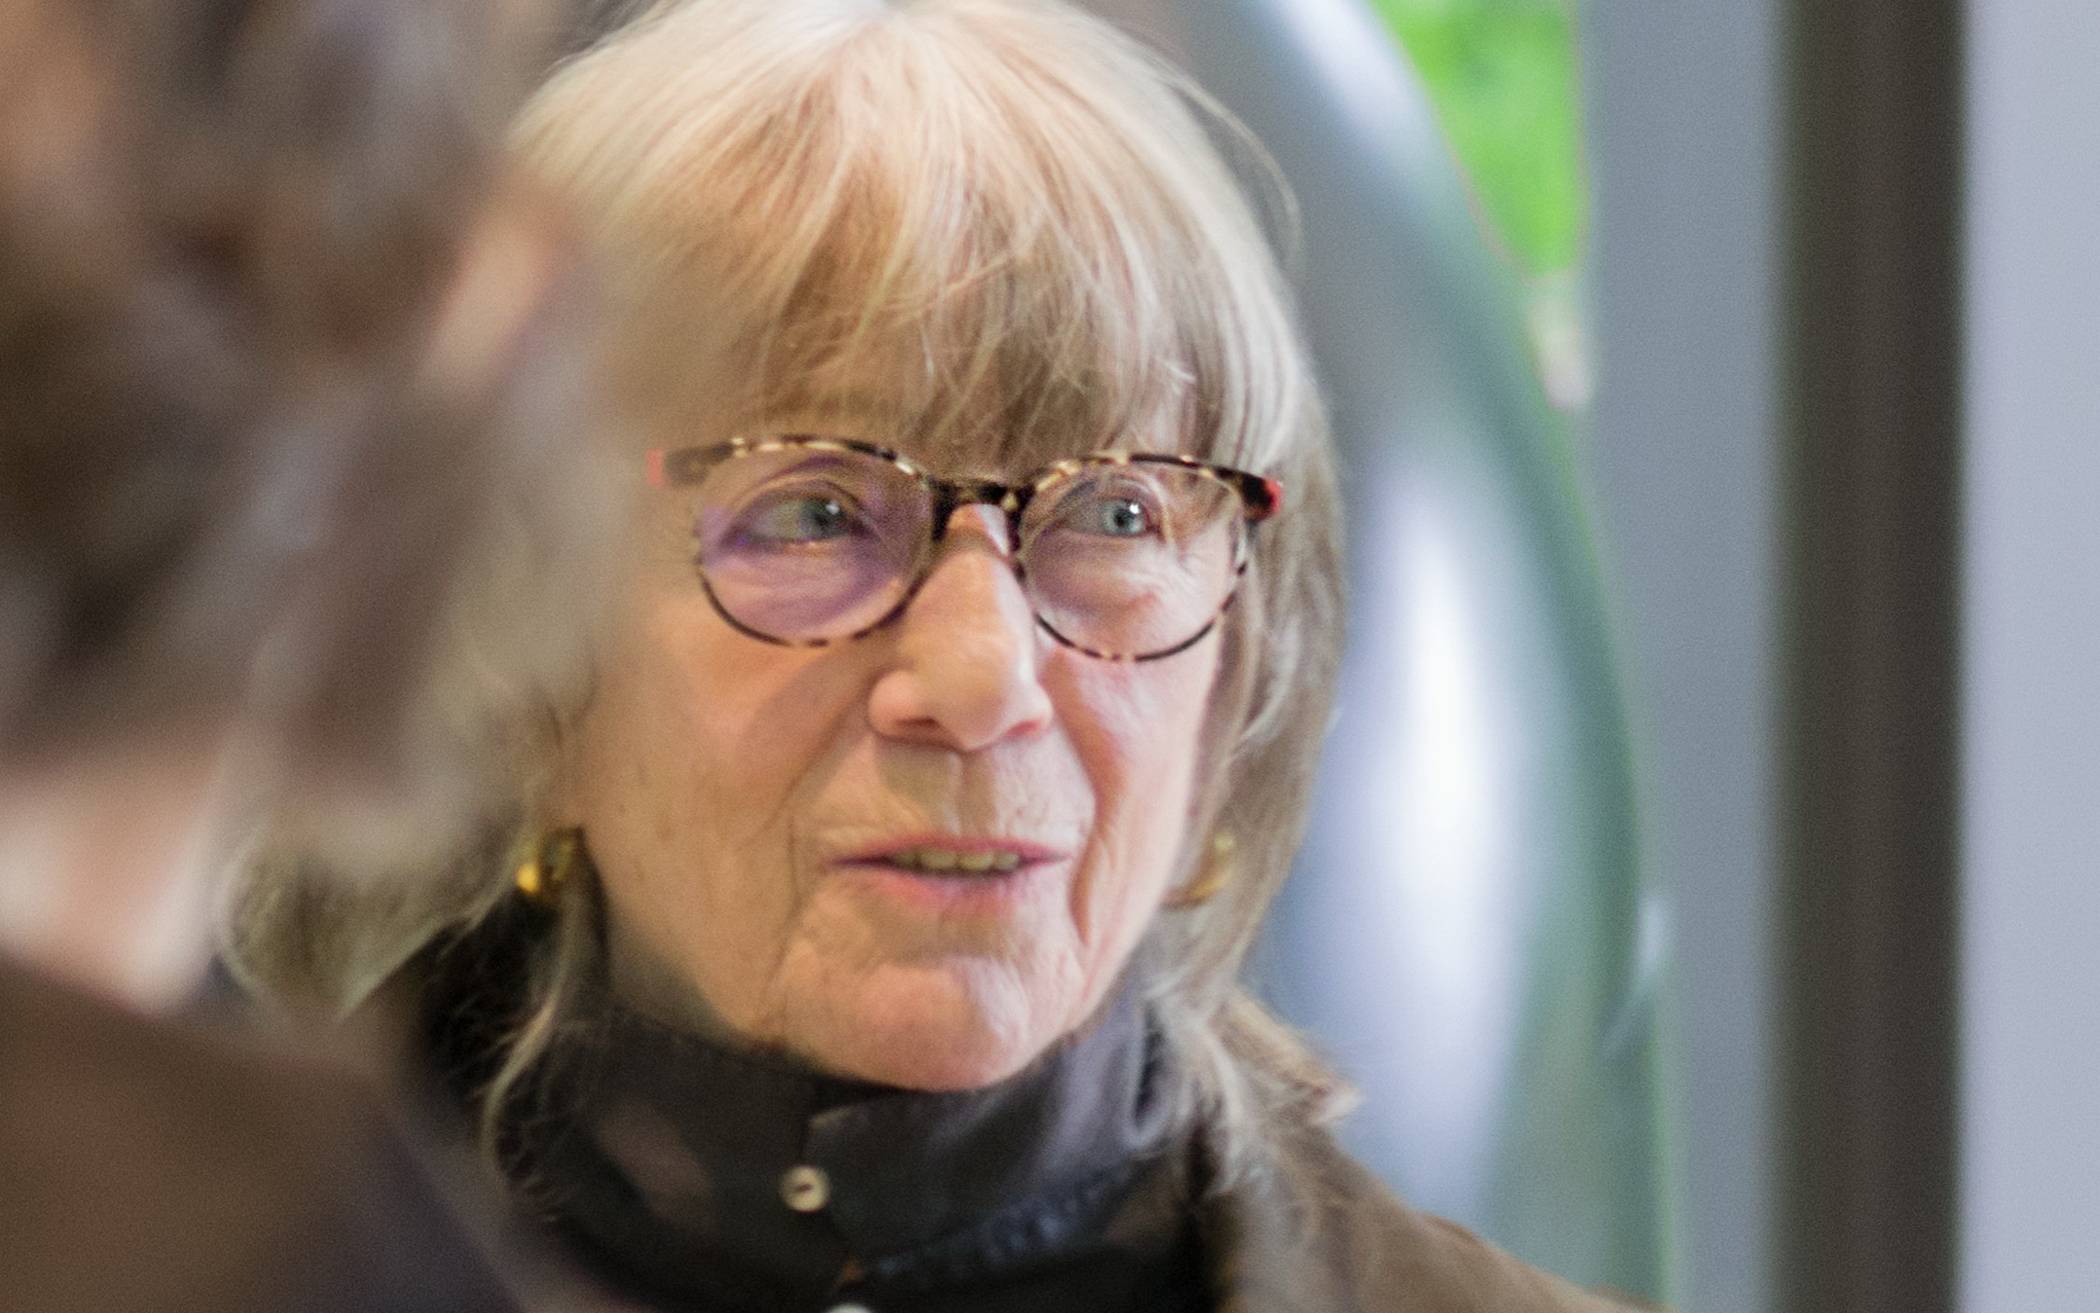  Hede Bühl: Die heute 78-jährige Künstlerin begann ihre „Laufbahn“ als Kind am Küchentisch. 